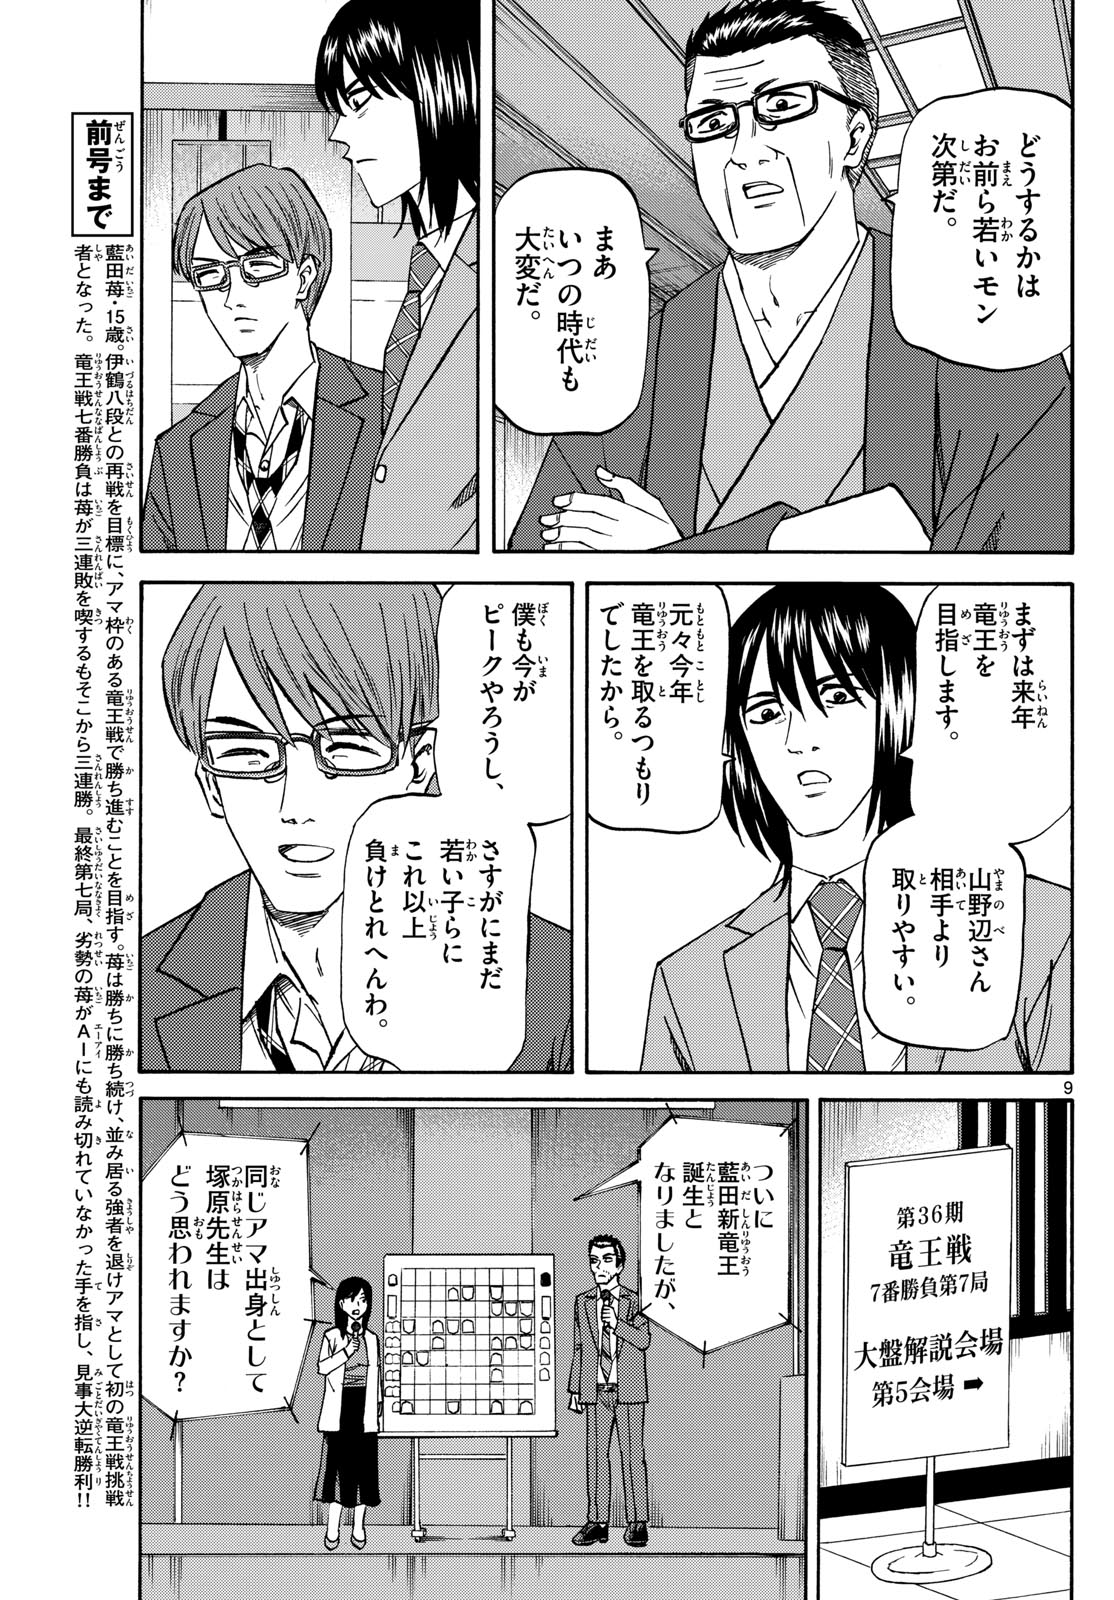 Tatsu to Ichigo - Chapter 180 - Page 9